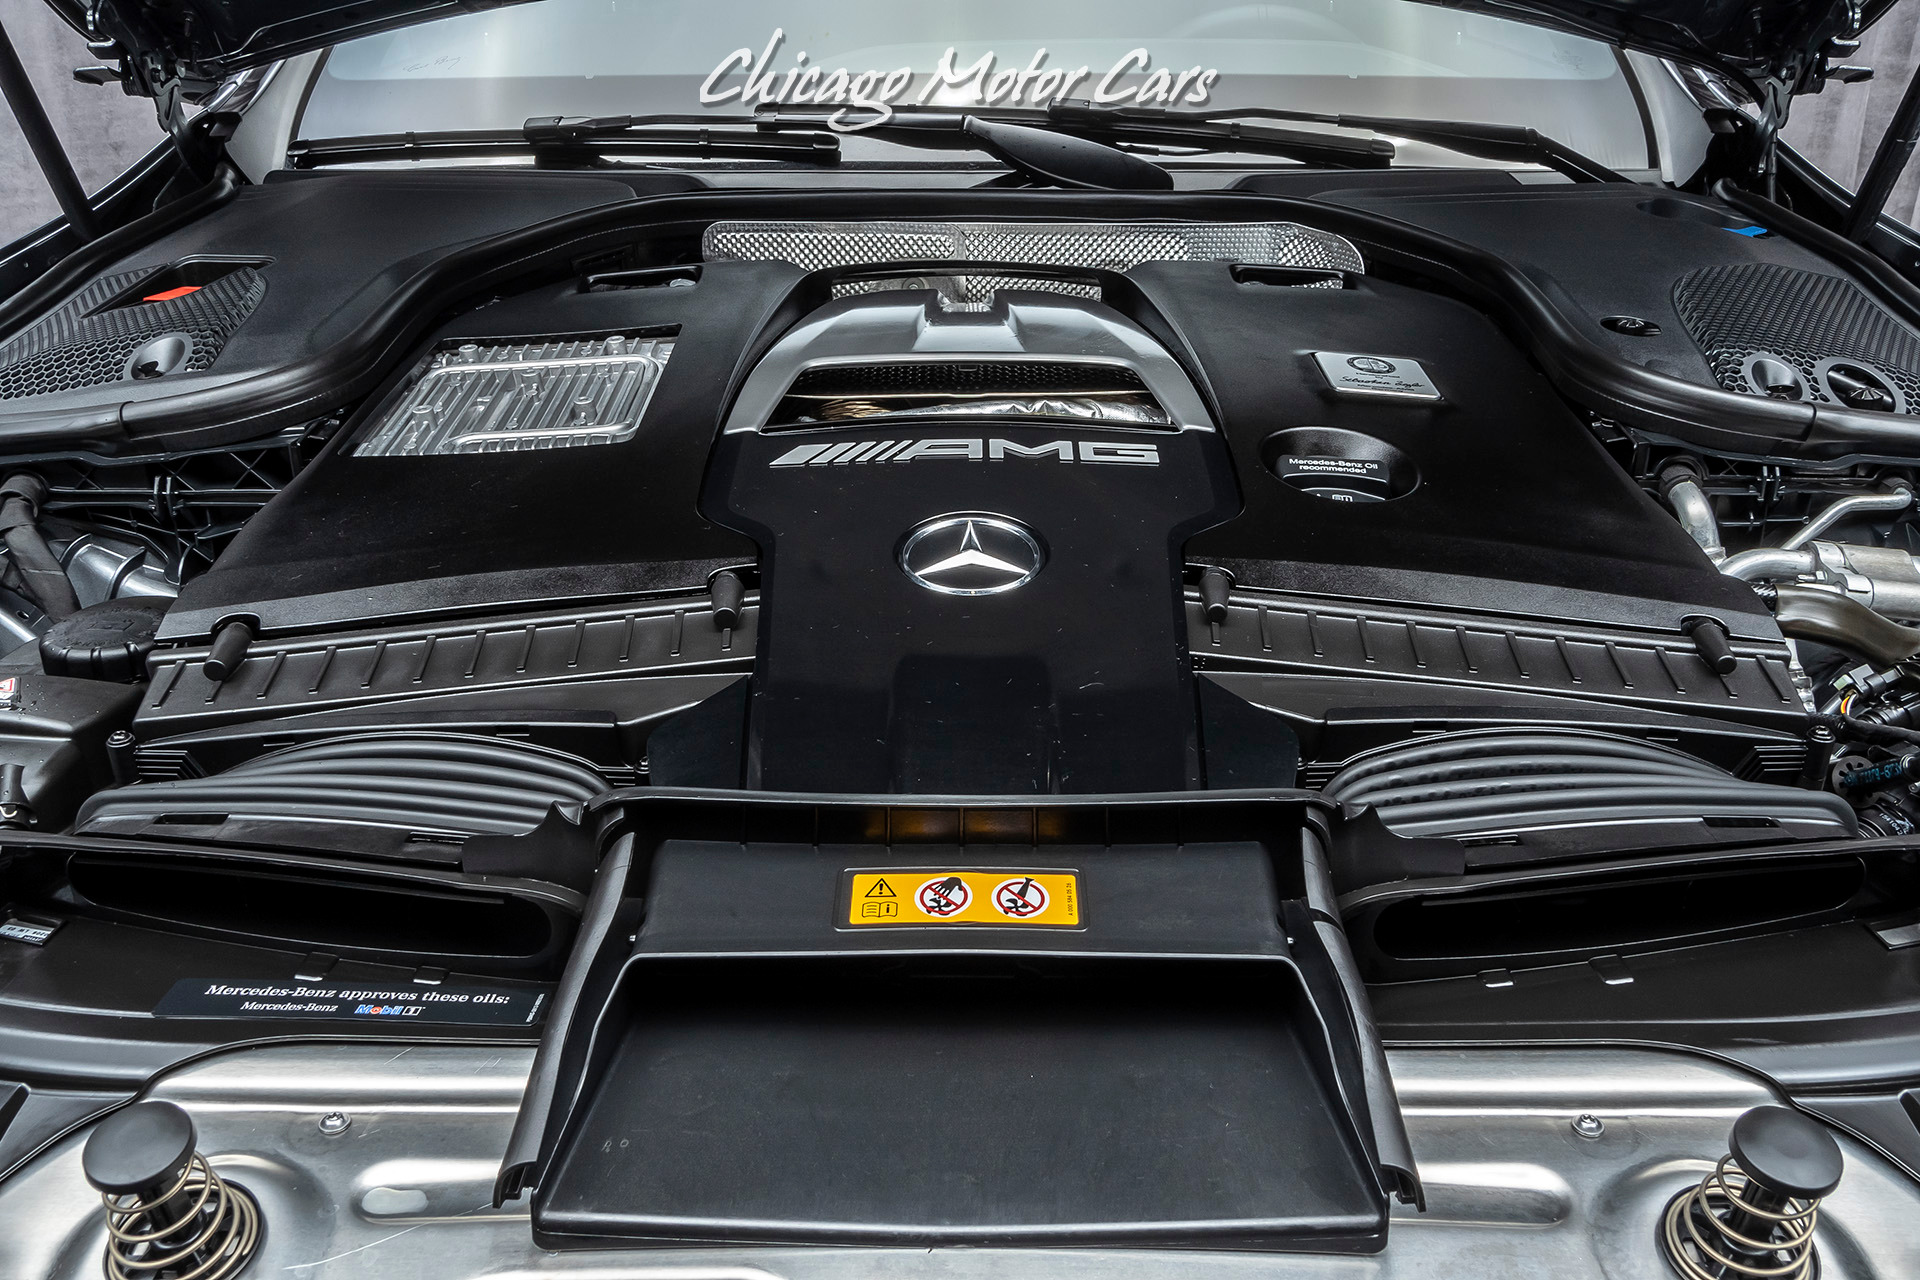 Used-2019-Mercedes-Benz-E63-S-4-Matic-Sedan-Original-MSRP-125k-LOADED-Only-4K-Miles-Carbon-Fiber